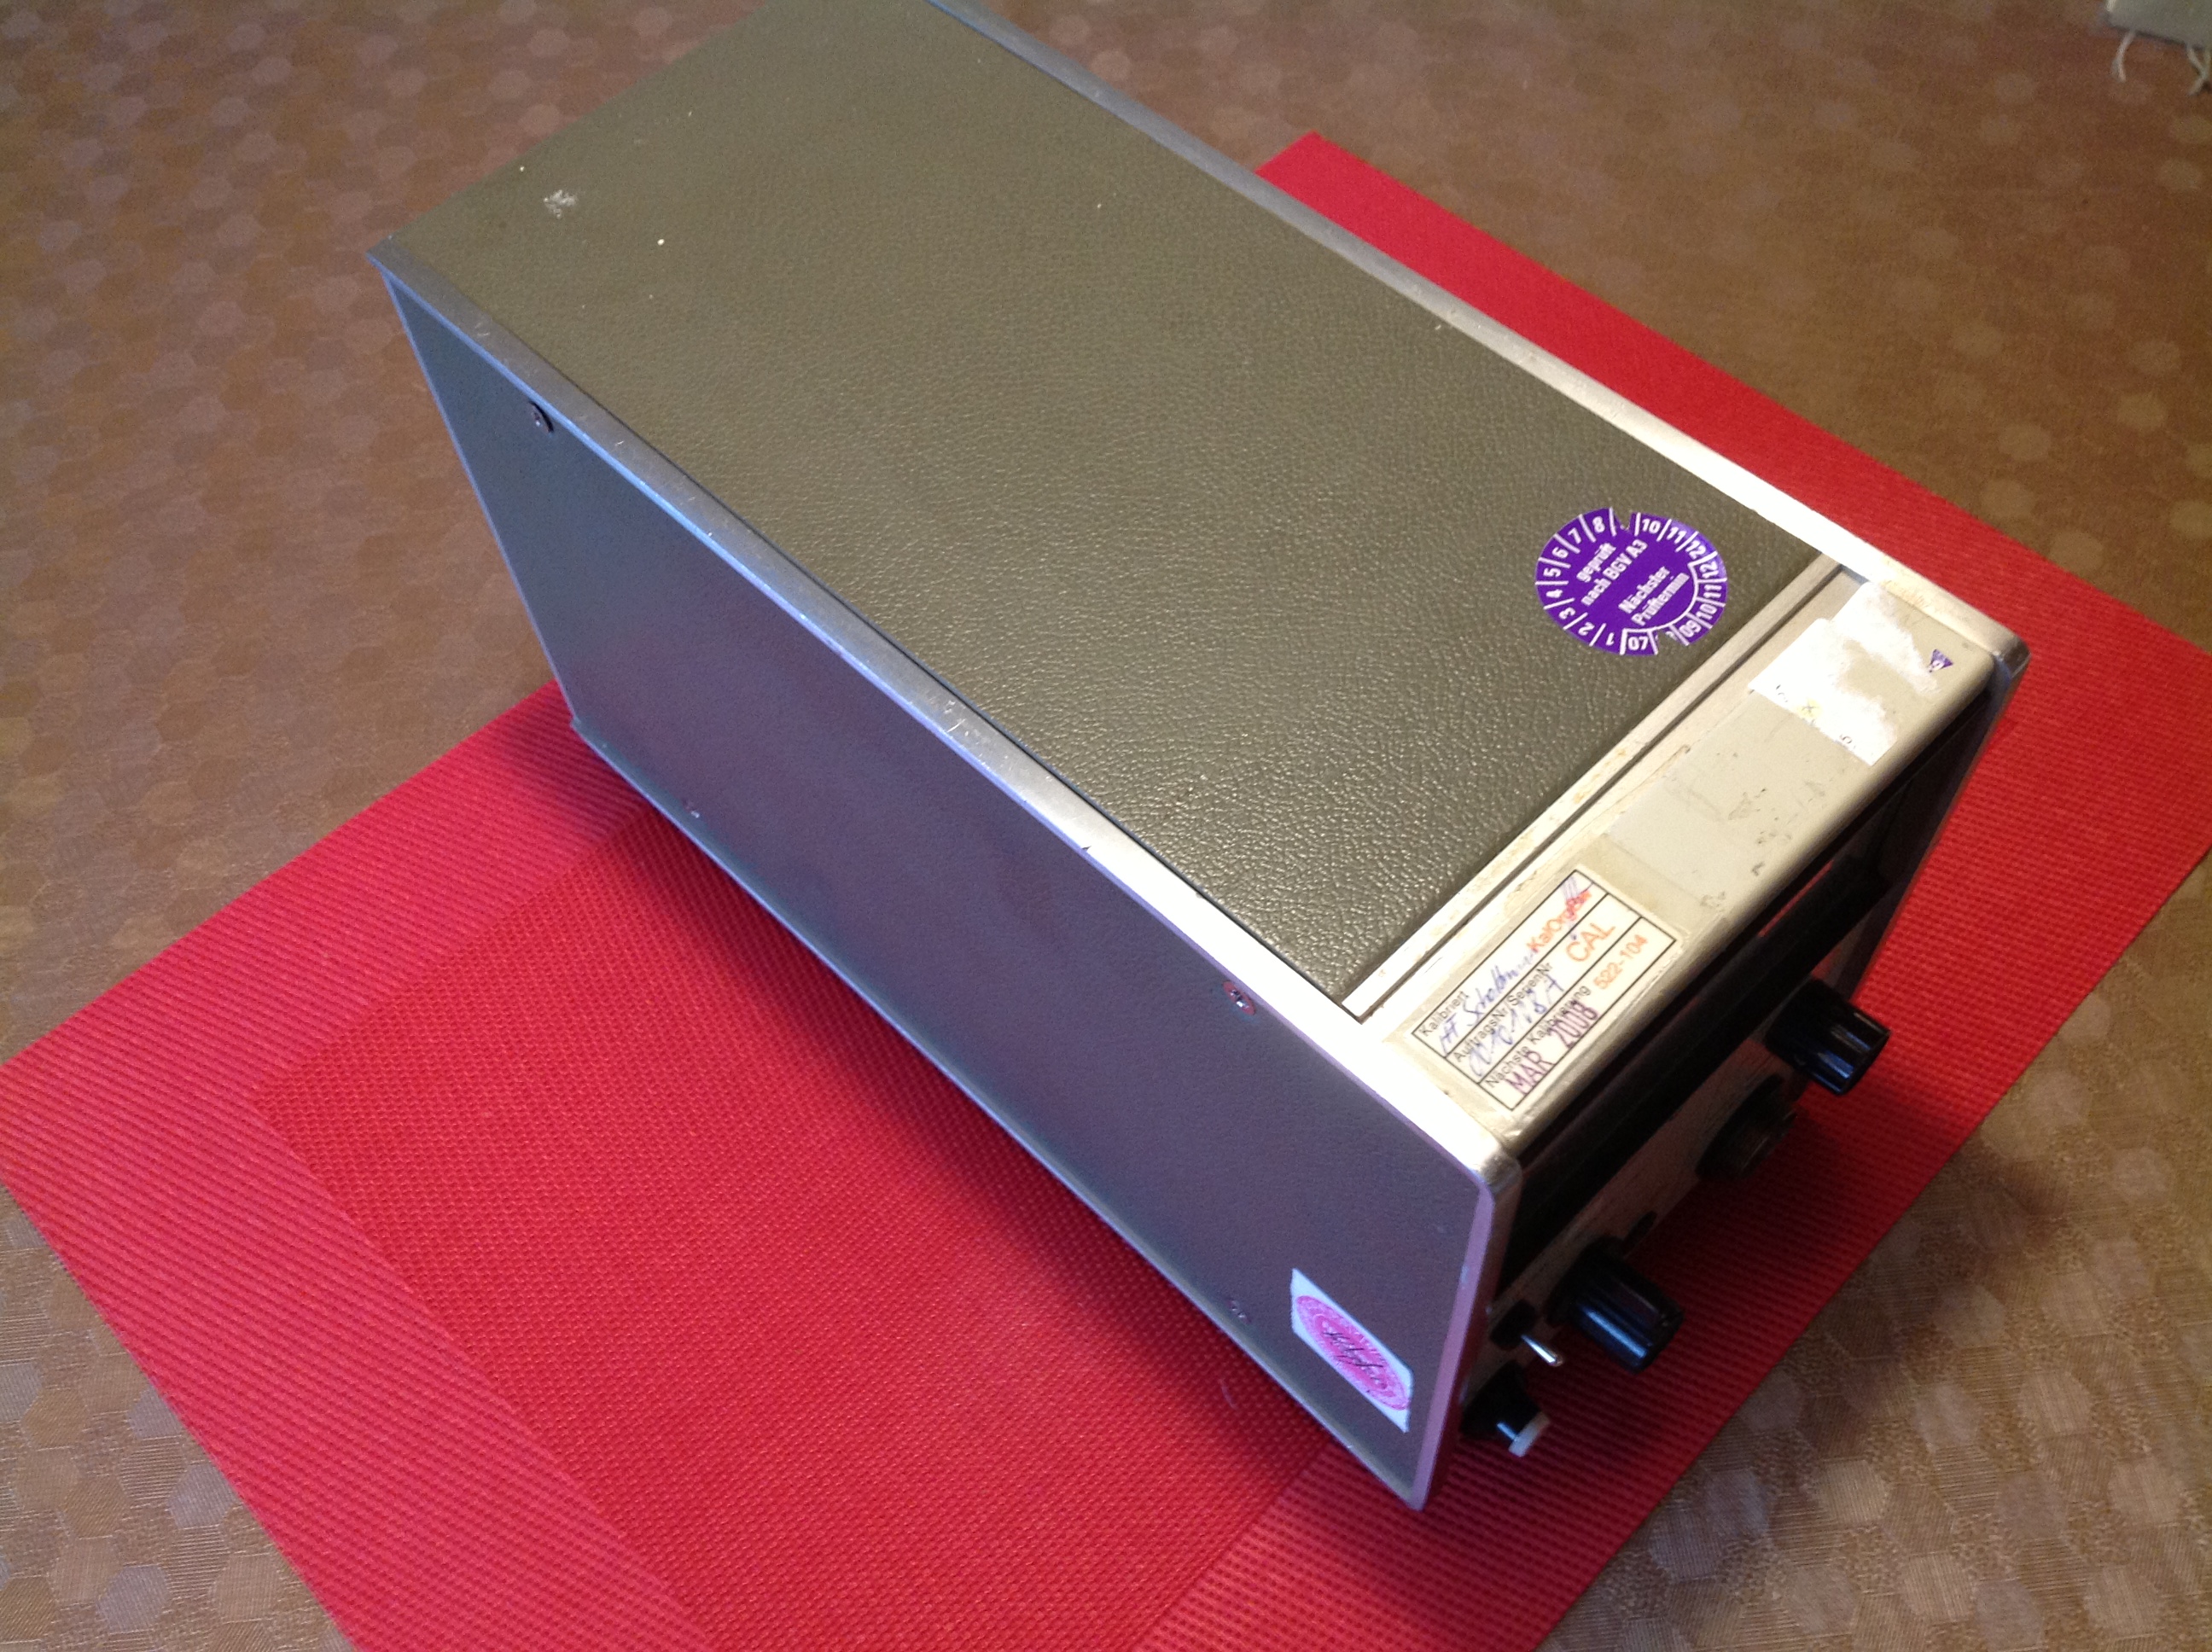 Hewlett Packard 432A Power Meter